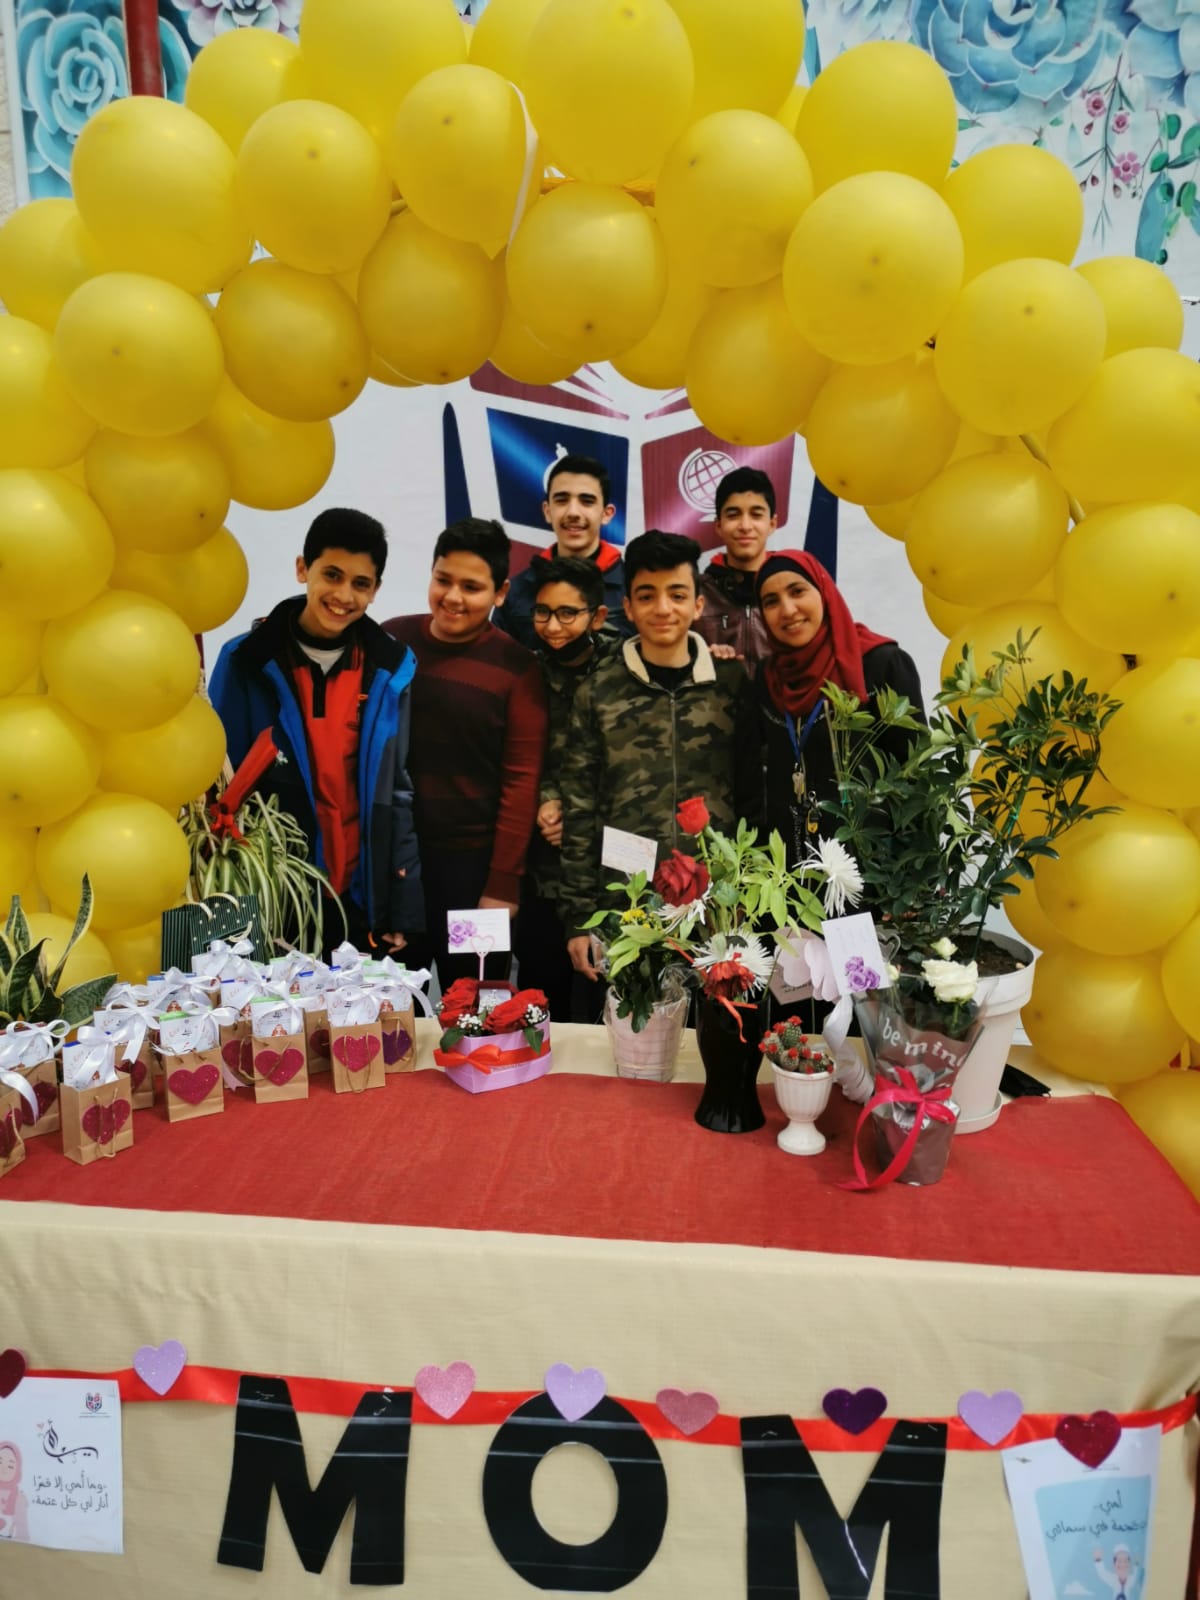 روضة و مدارس الوفاق النموذجية تحتفل بذكرى معركة الكرامة المجيدة ويوم الأم